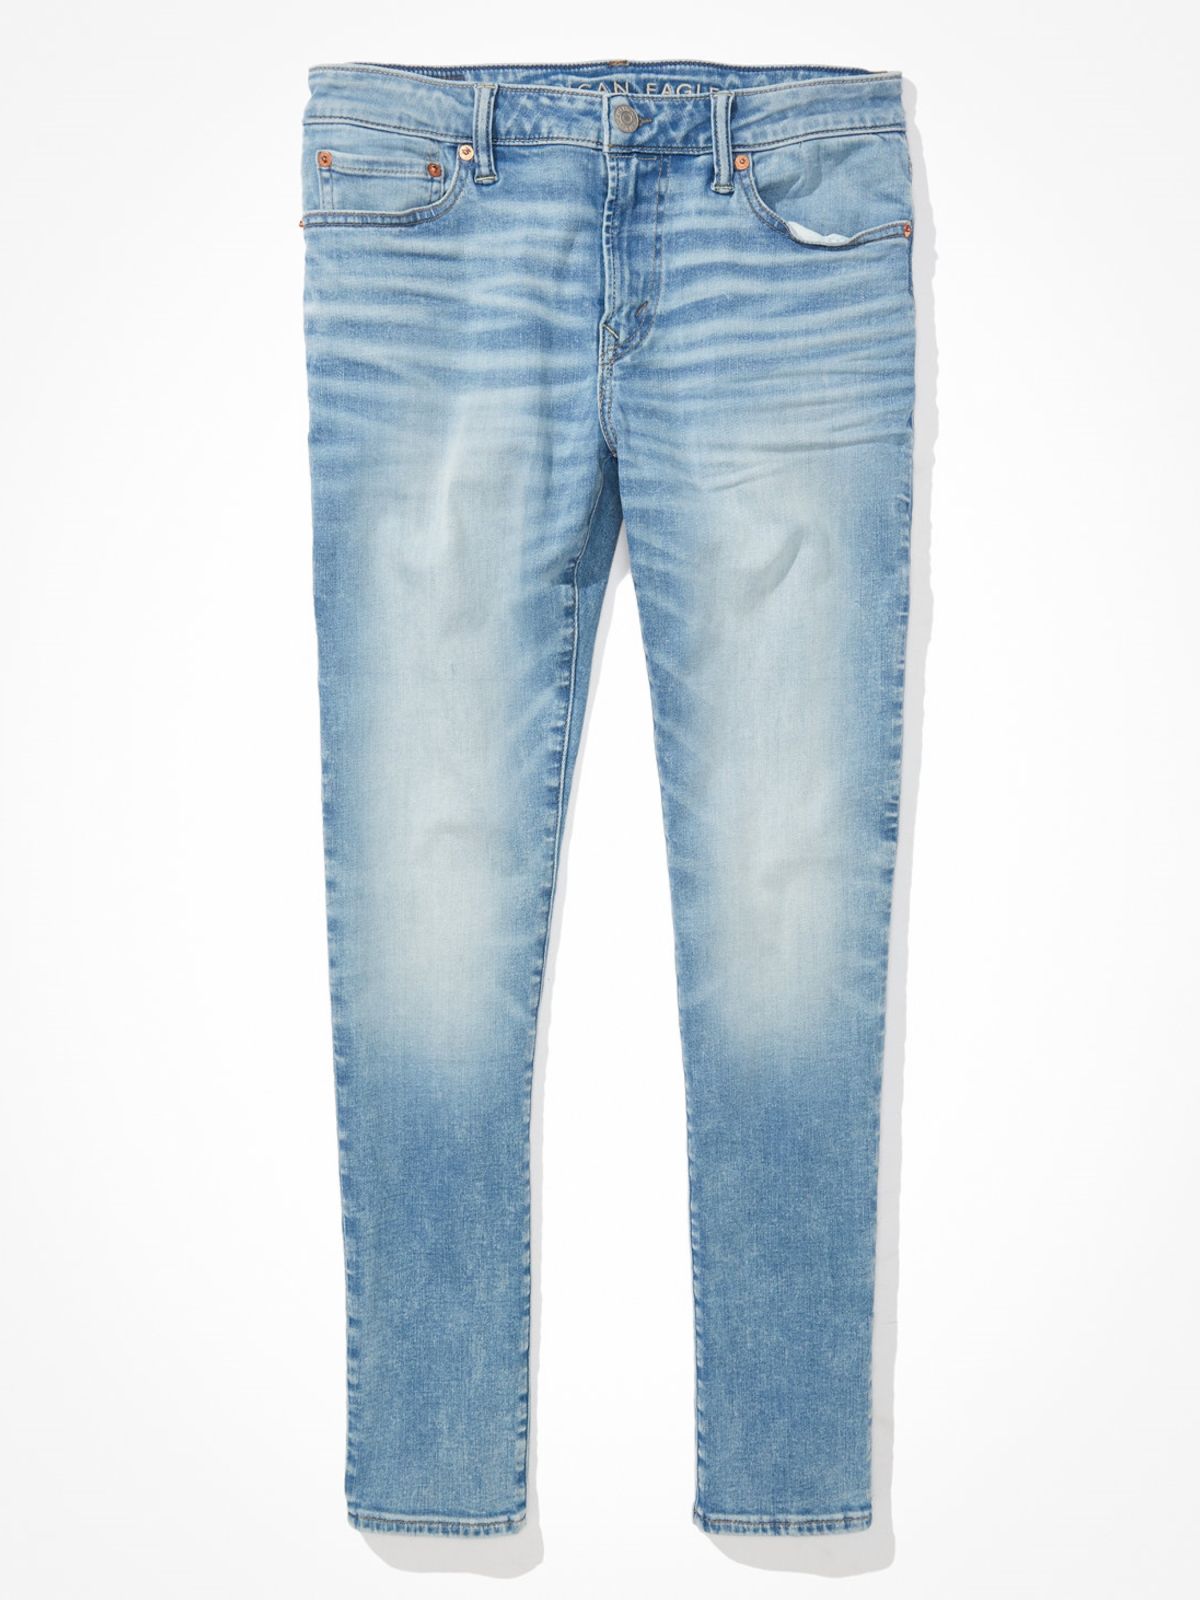  ג'ינס בגזרת Skinny של AMERICAN EAGLE